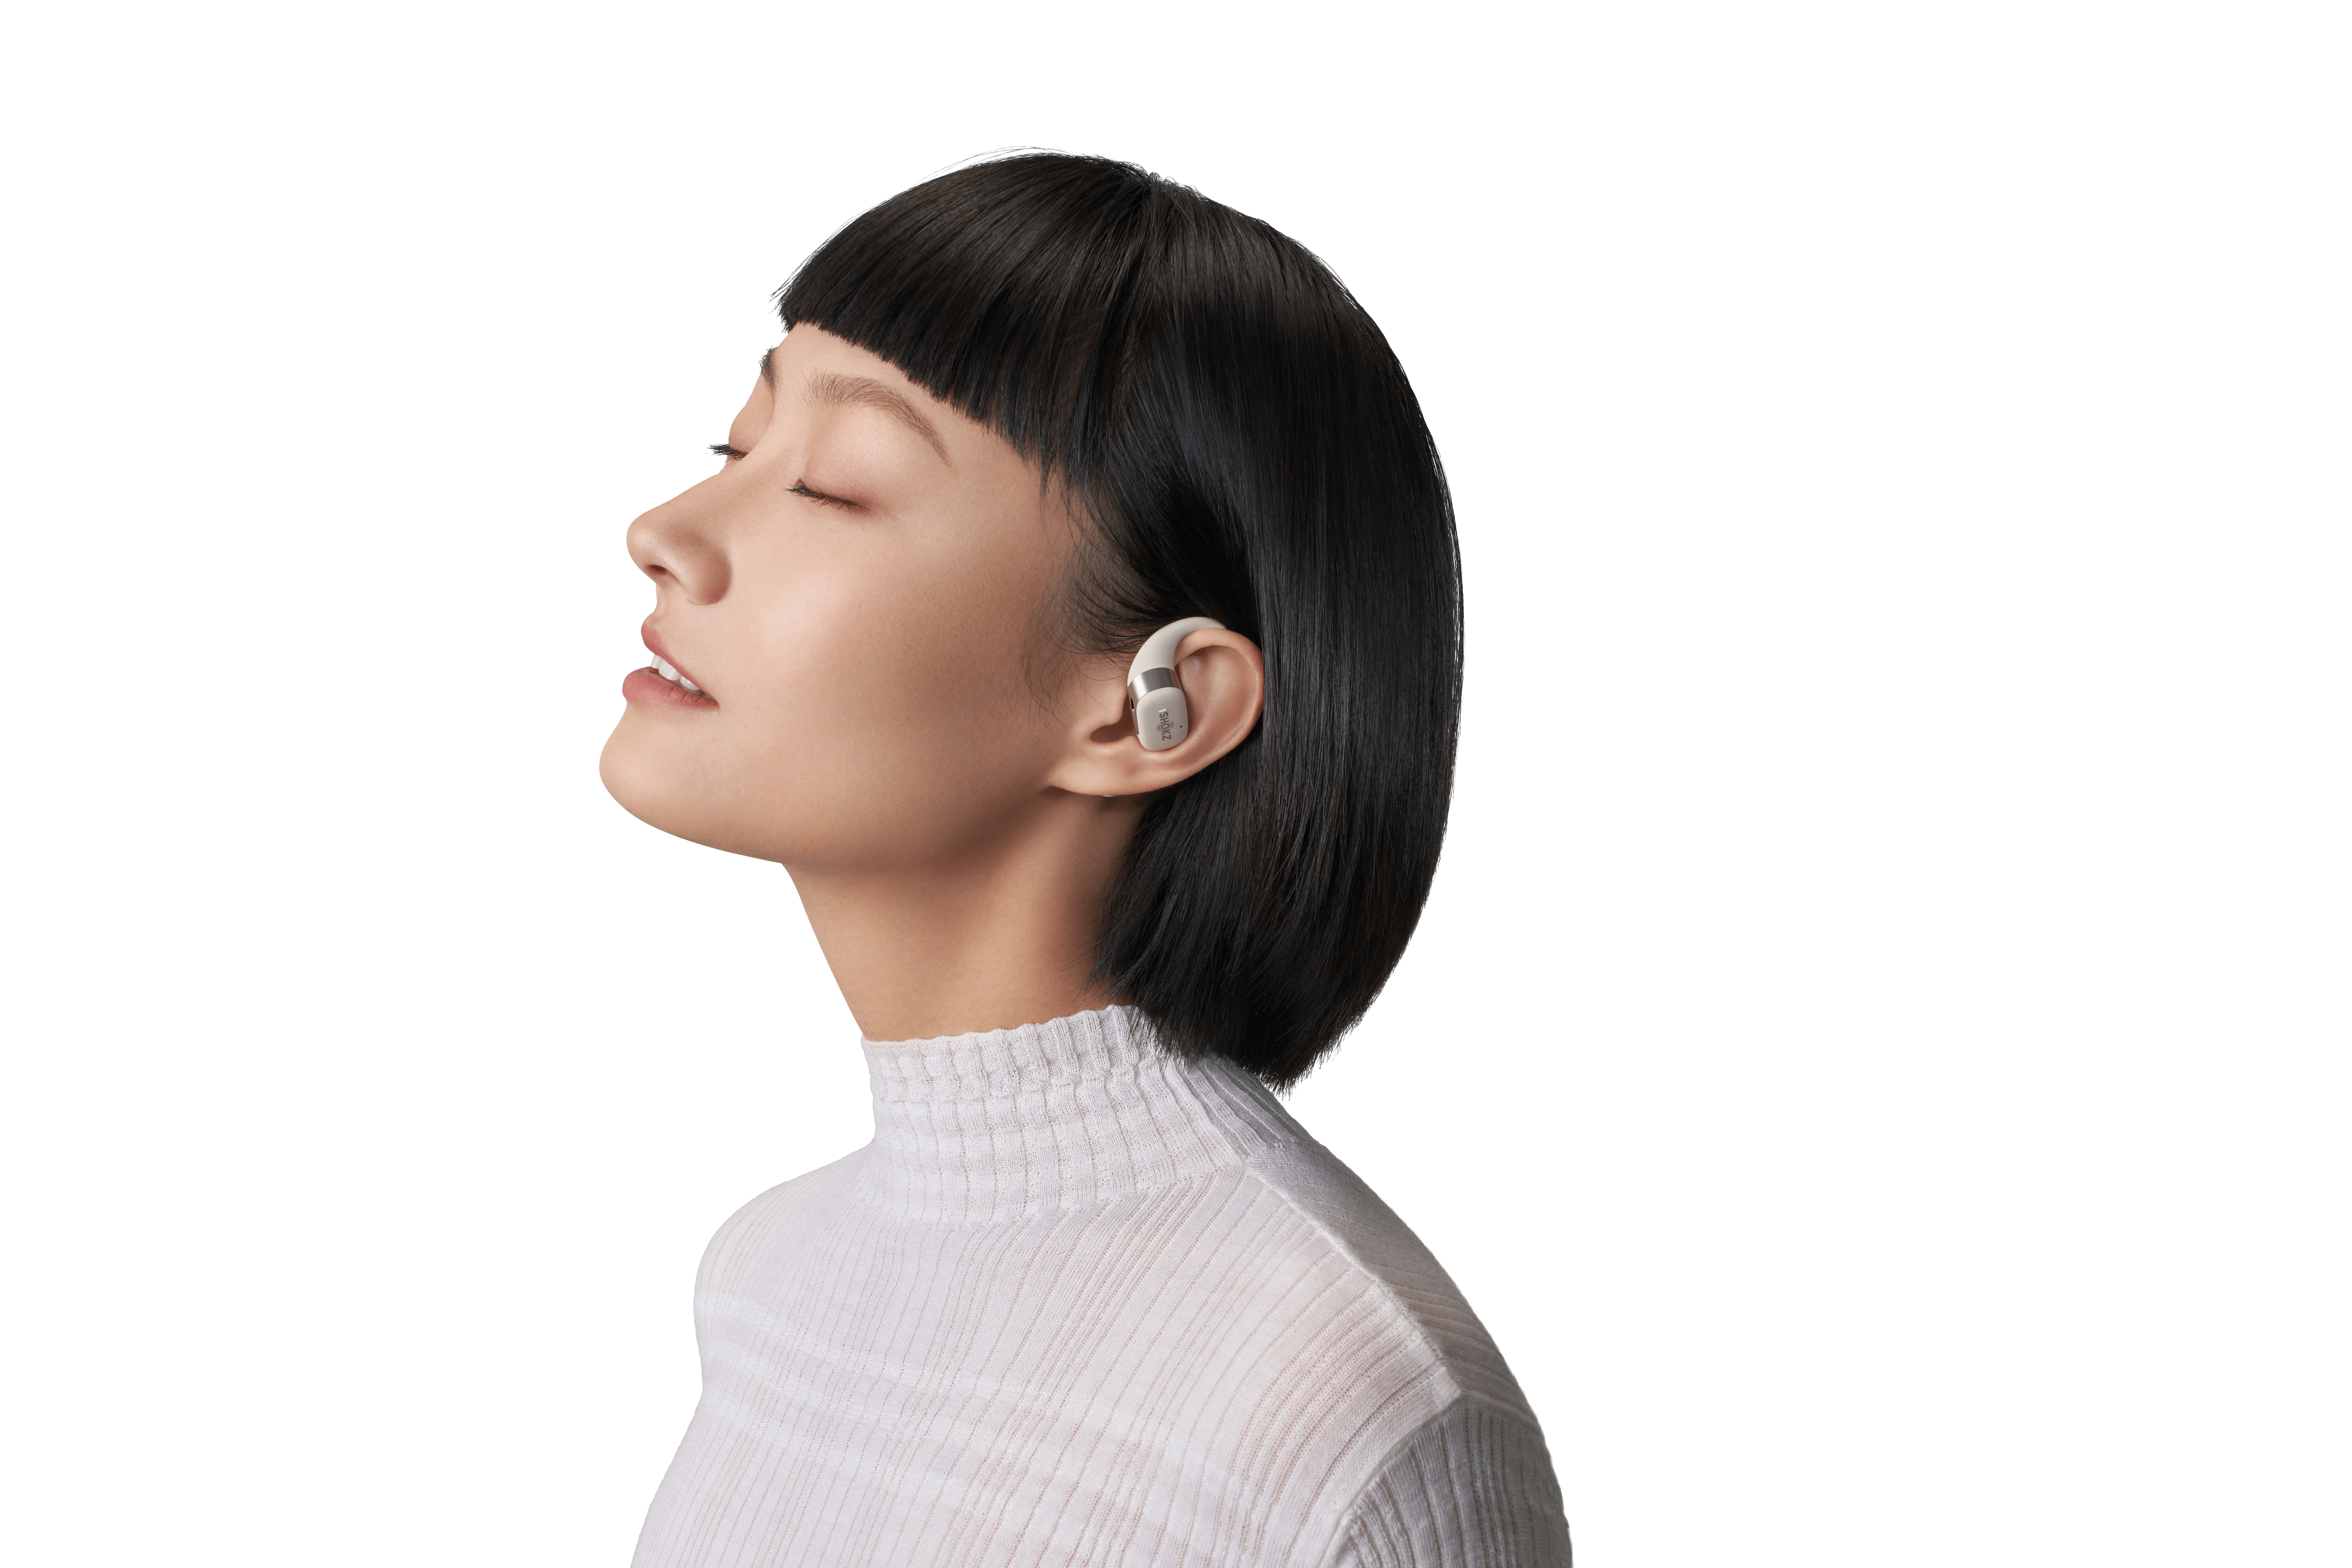 Tai nghe không nhét tai Bluetooth True Wireless Earbuds Shokz OpenFit - Thế Hệ Mới Nhất - Hàng Chính Hãng